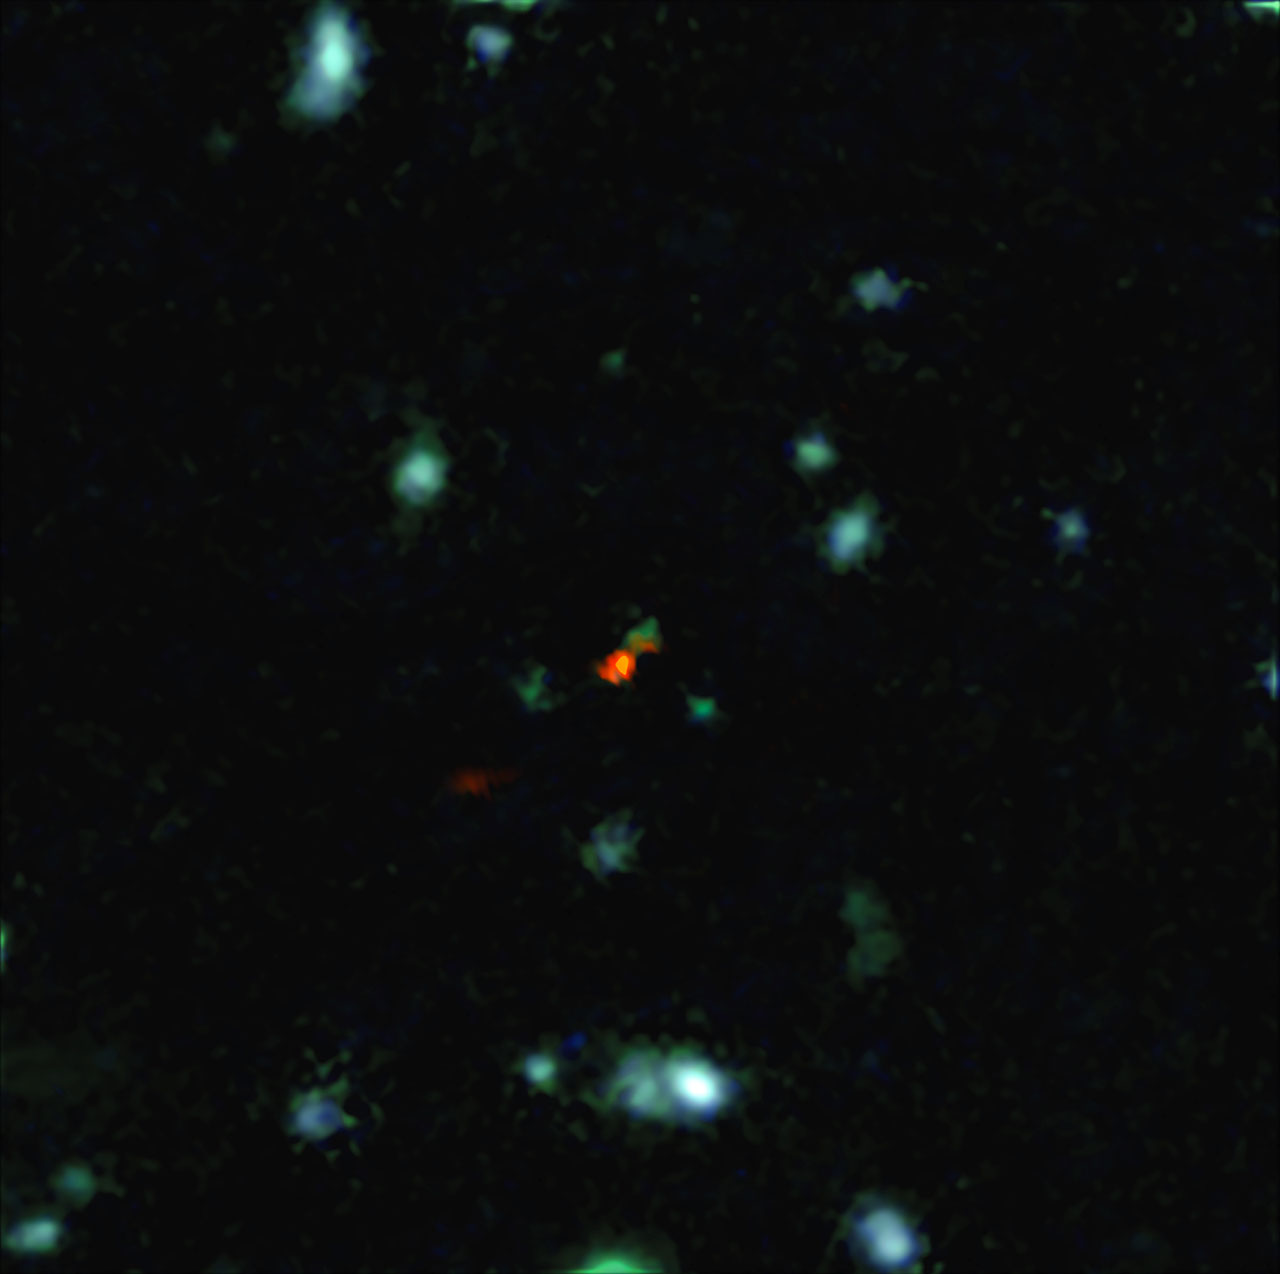 Questa veduta è una combinazione di immagini di ALMA e del VLT (Very Large Telescope). L'oggetto centrale è una galassia molto distante, chiamata BDF 3299, vista quando l'Universo aveva meno di 800 milioni di anni. La nube rossa brillante in basso a sinistra è la detezione di ALMA di una grande nube di materia in procinto di formare la nuova galassia molto giovane. Crediti: ESO/R. Maiolino